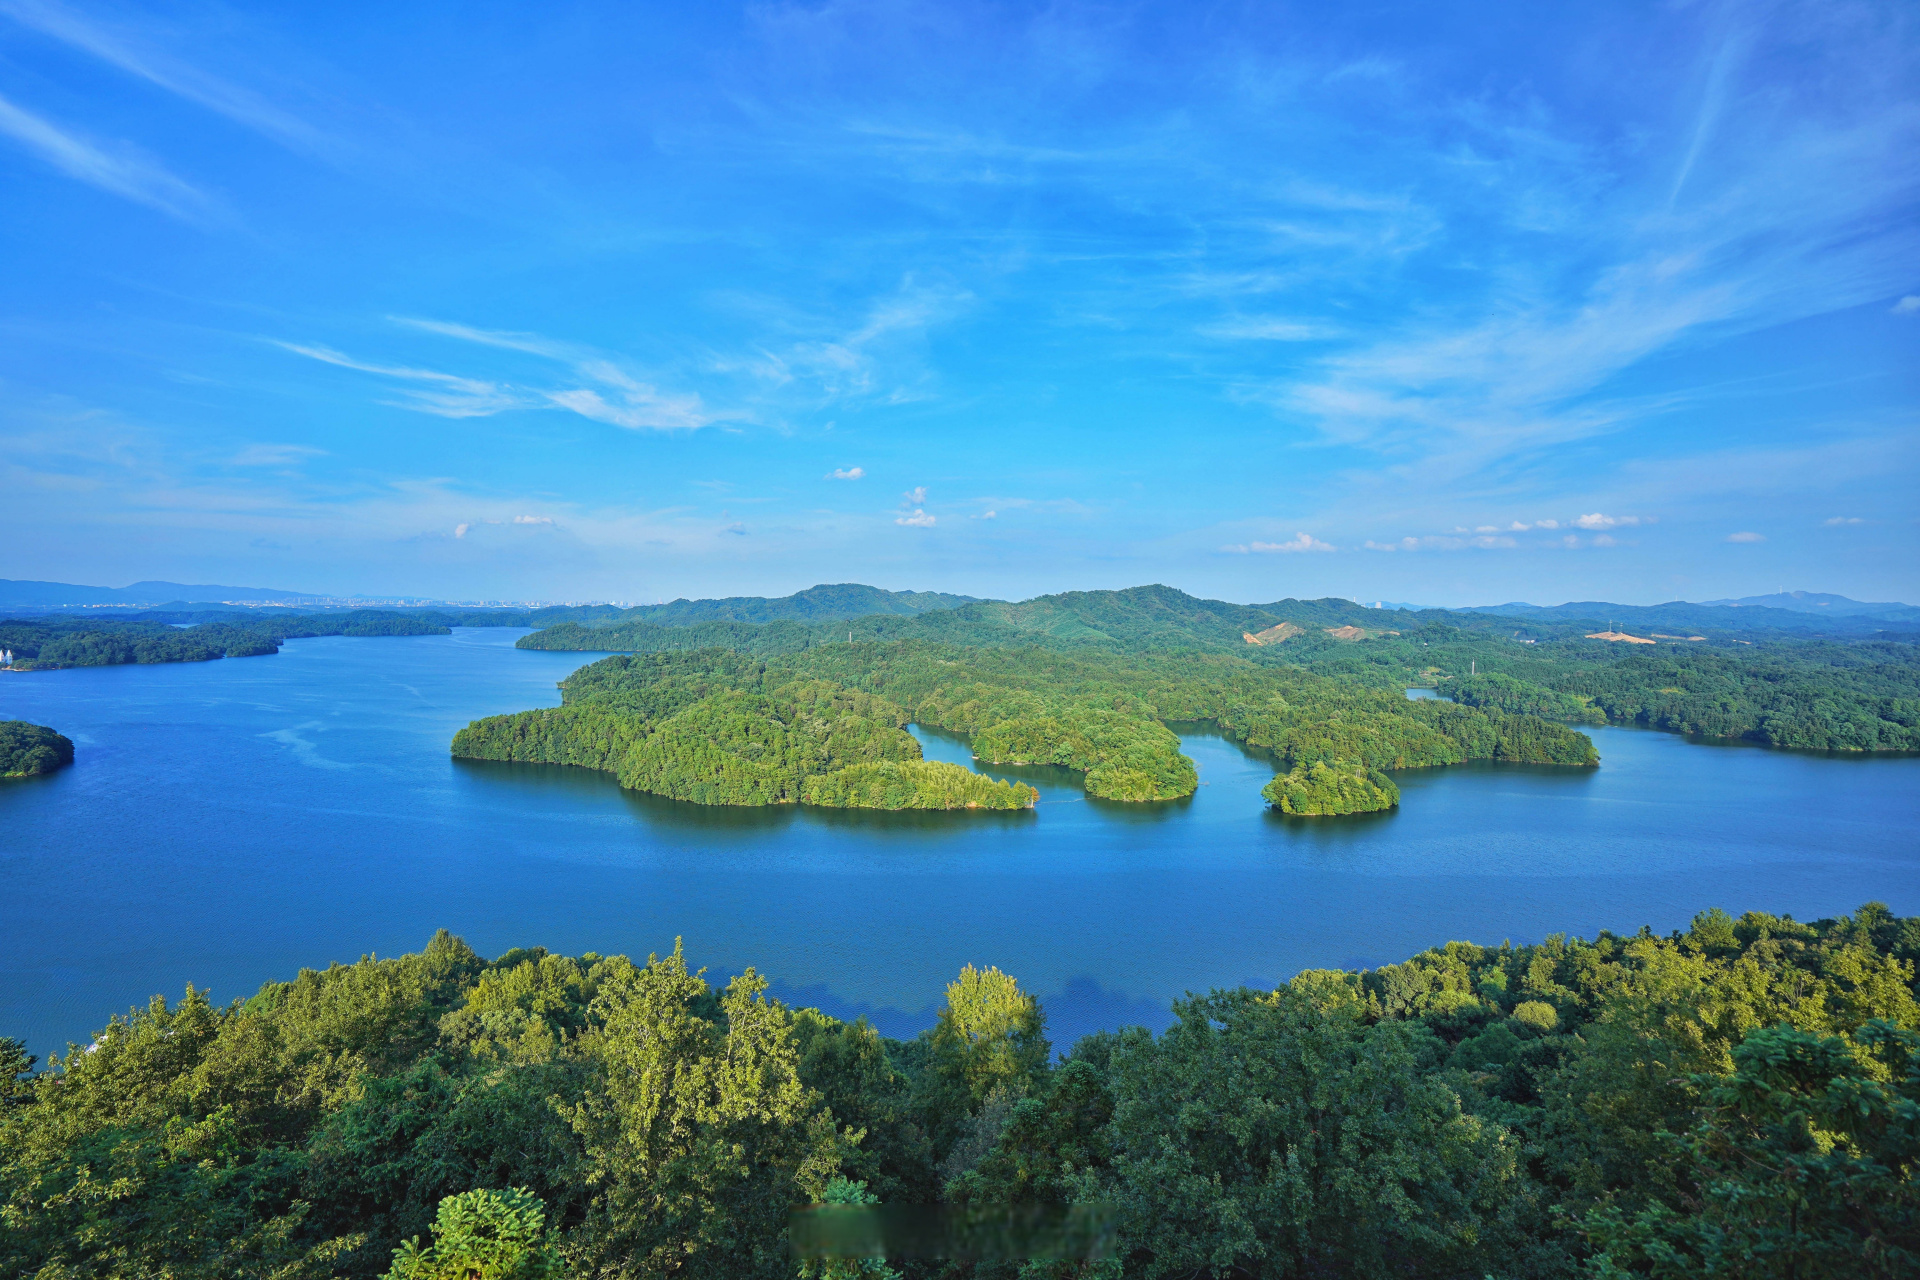 仙女湖位于江西省新余市西南郊,亚洲最大的亚热带树种基因库,是江西